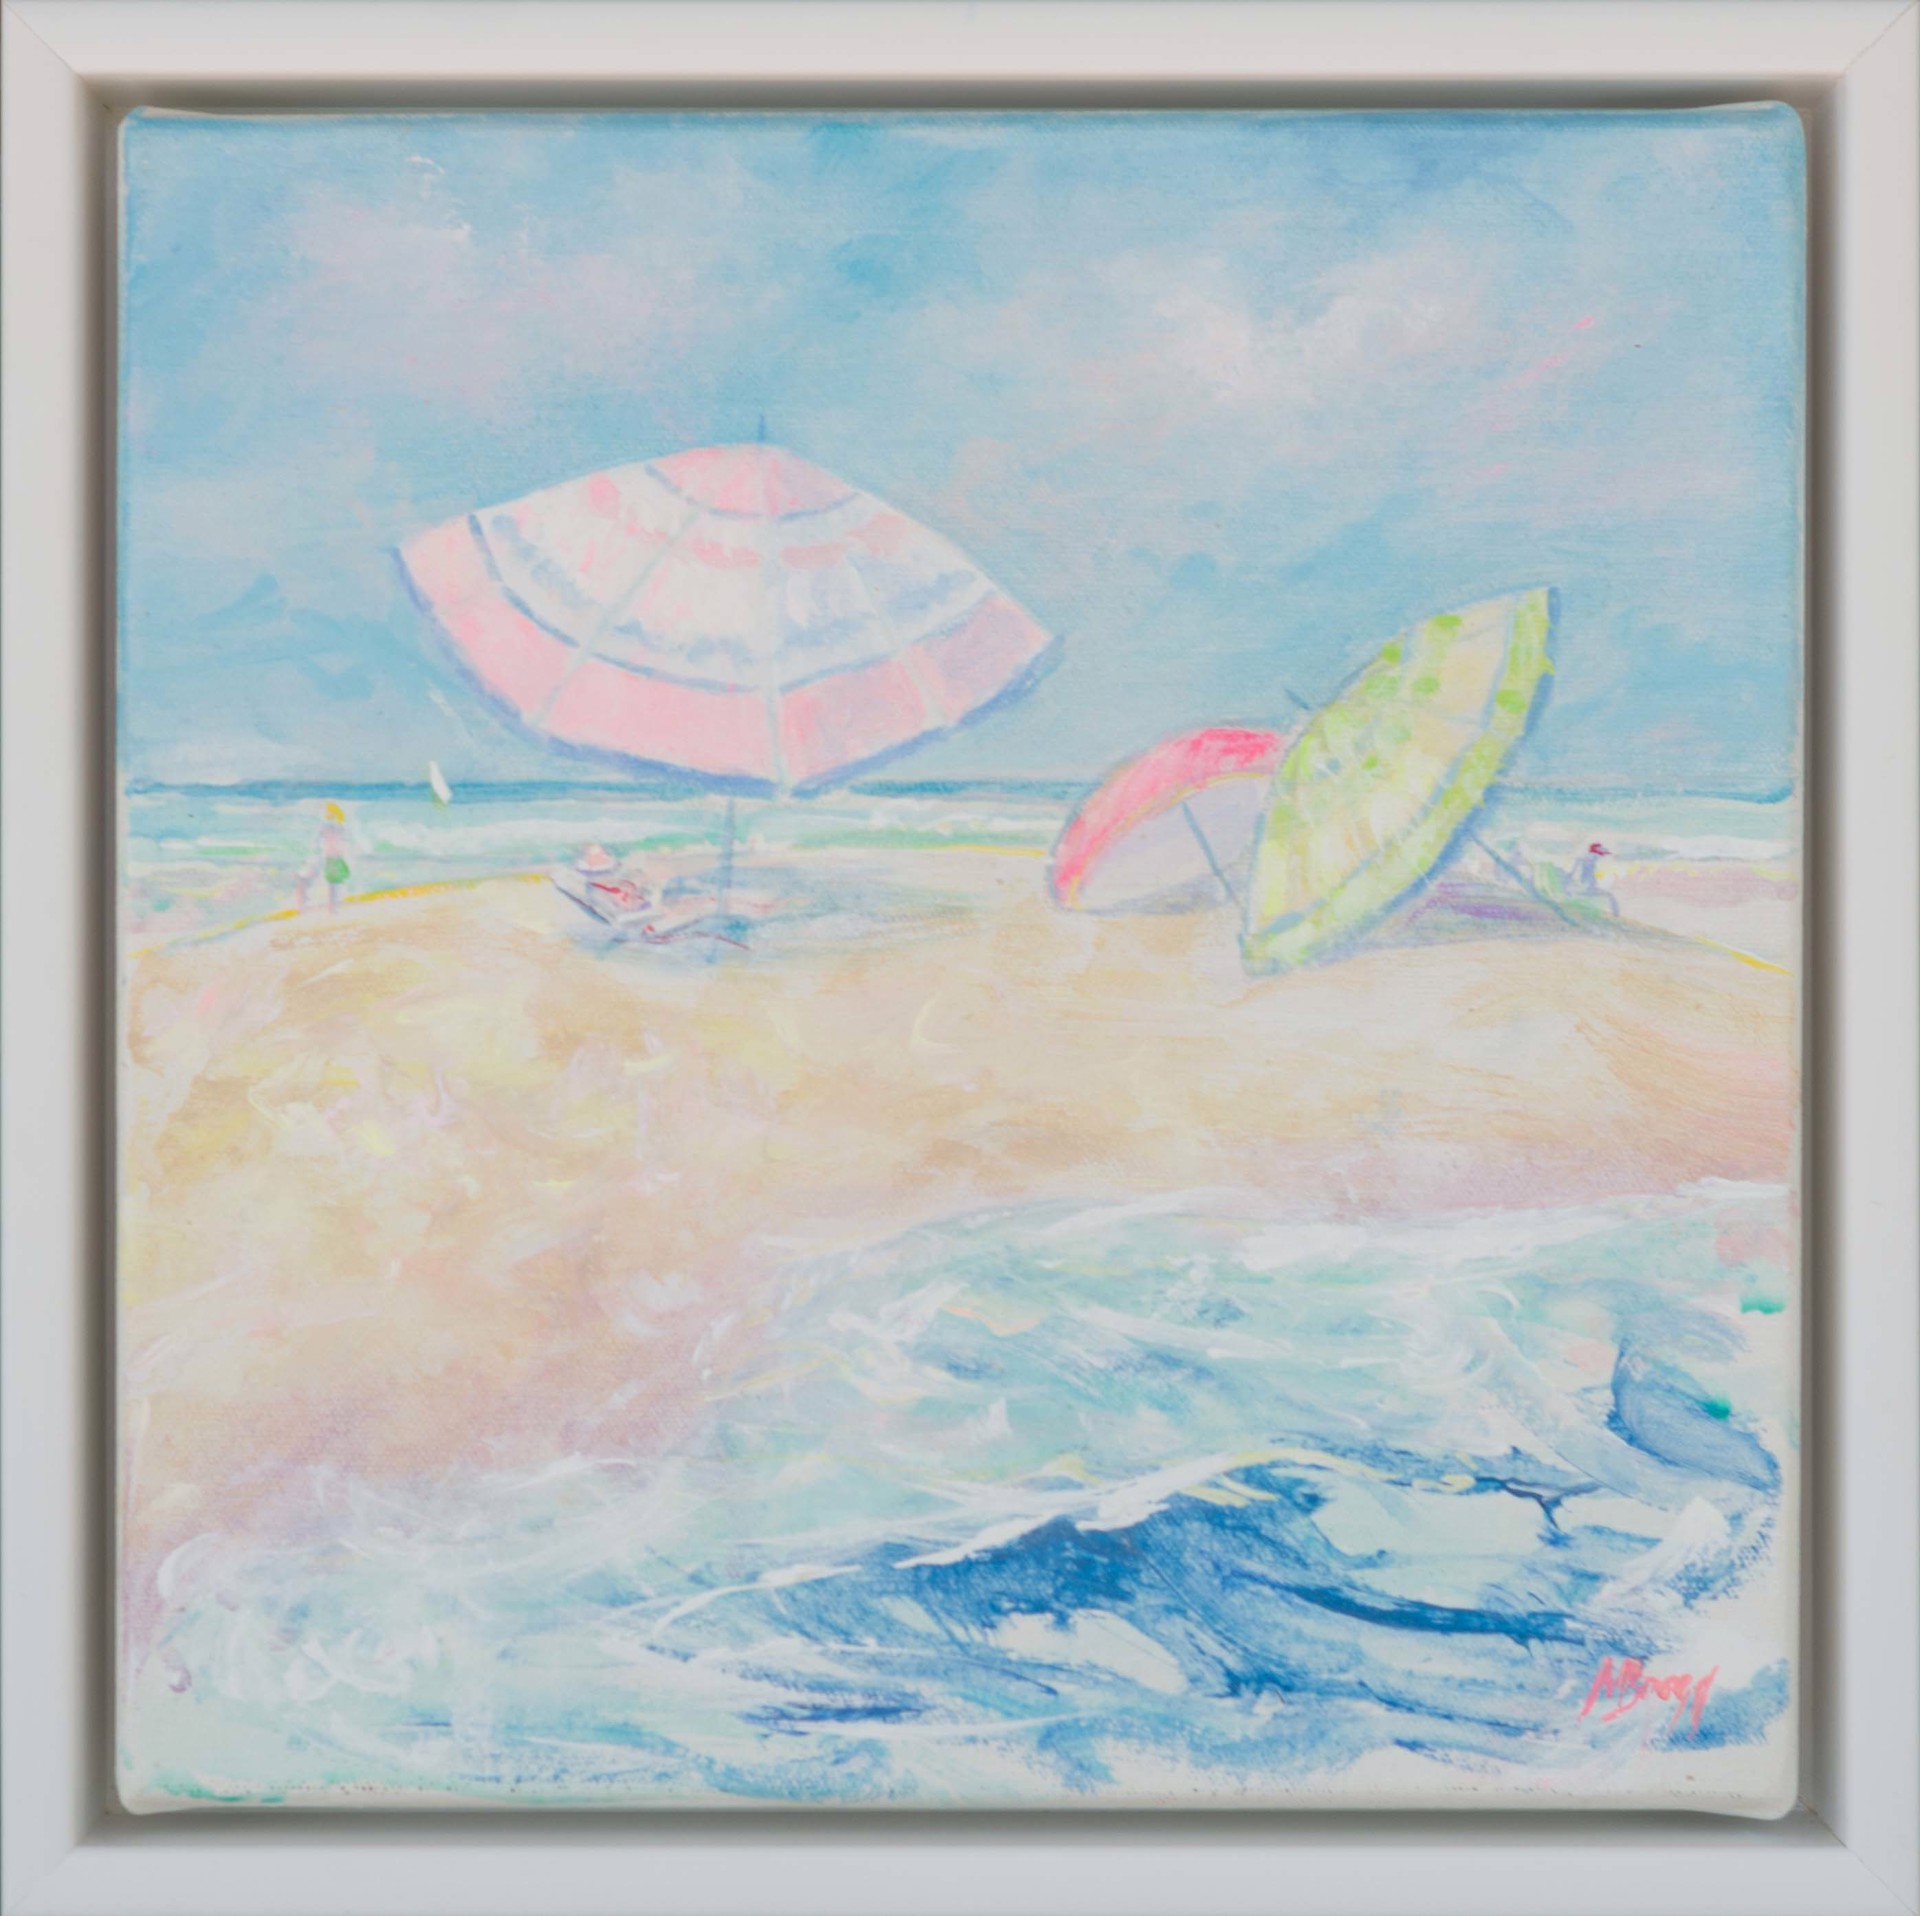 Beach Umbrellas III by Margaret Bragg